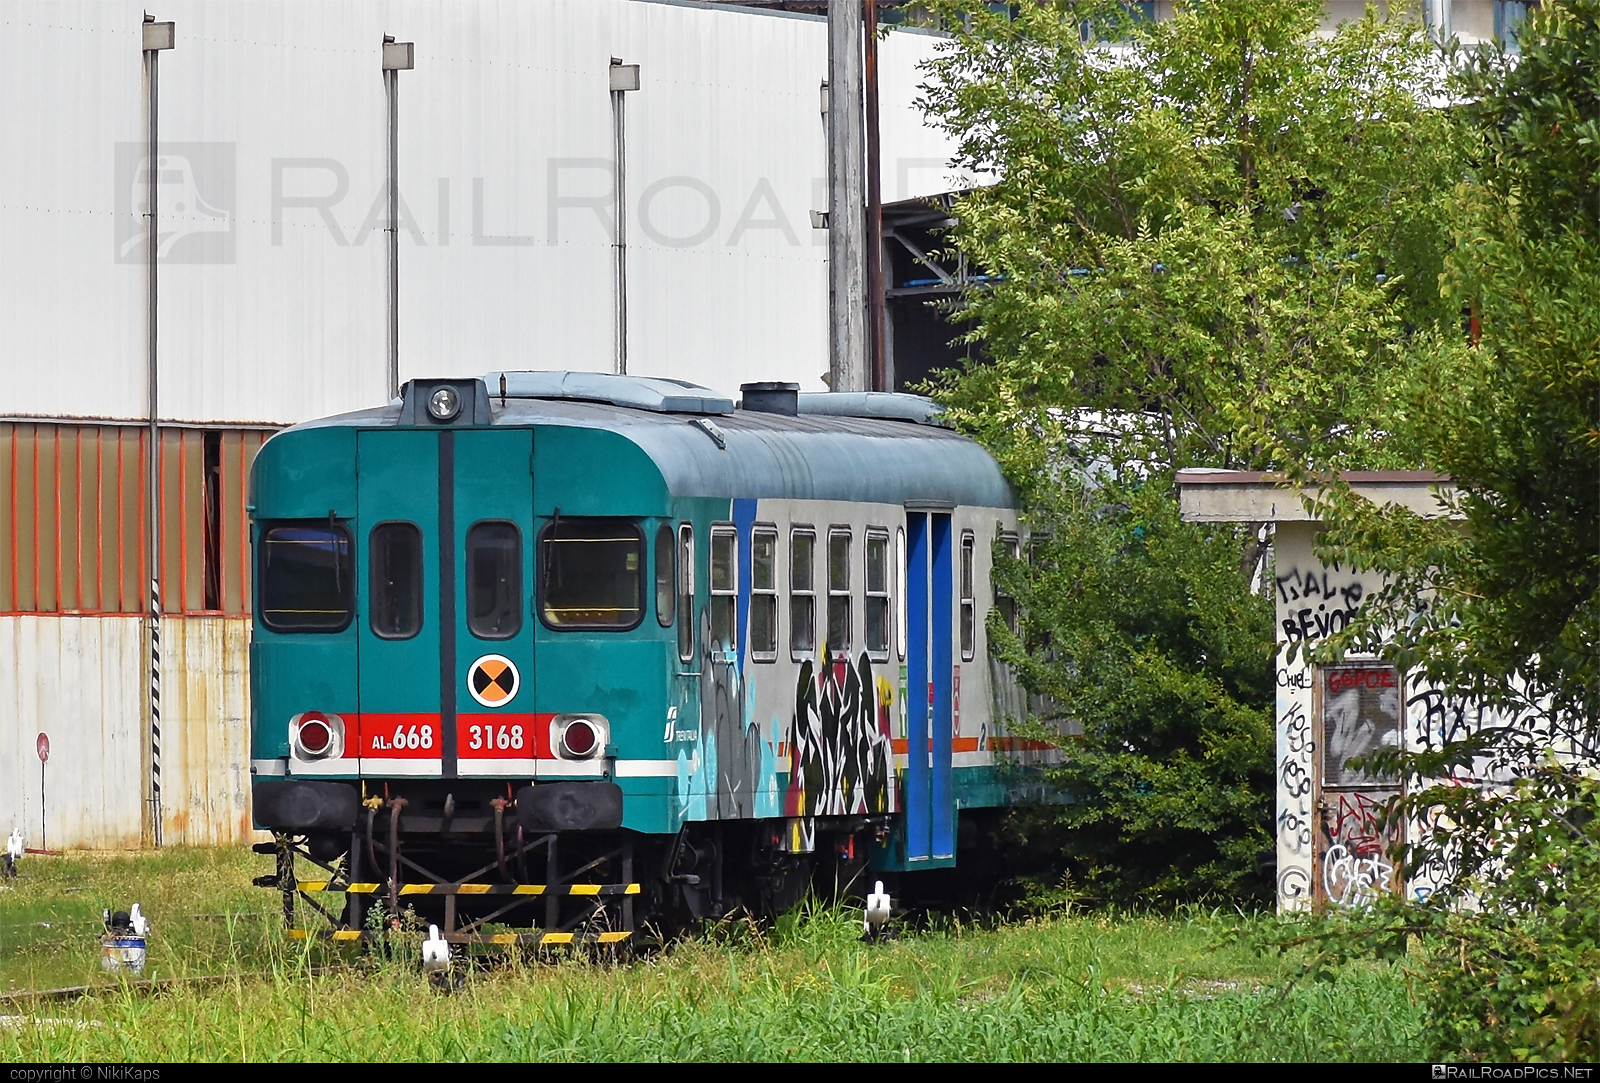 Fiat Ferroviaria ALn 668 - ALn 668 3168 operated by Trenitalia S.p.A. #aln668 #ferroviedellostato #fiat #fiataln668 #fiatferroviaria #fiatferroviariaaln668 #fs #fsitaliane #graffiti #trenitalia #trenitaliaspa